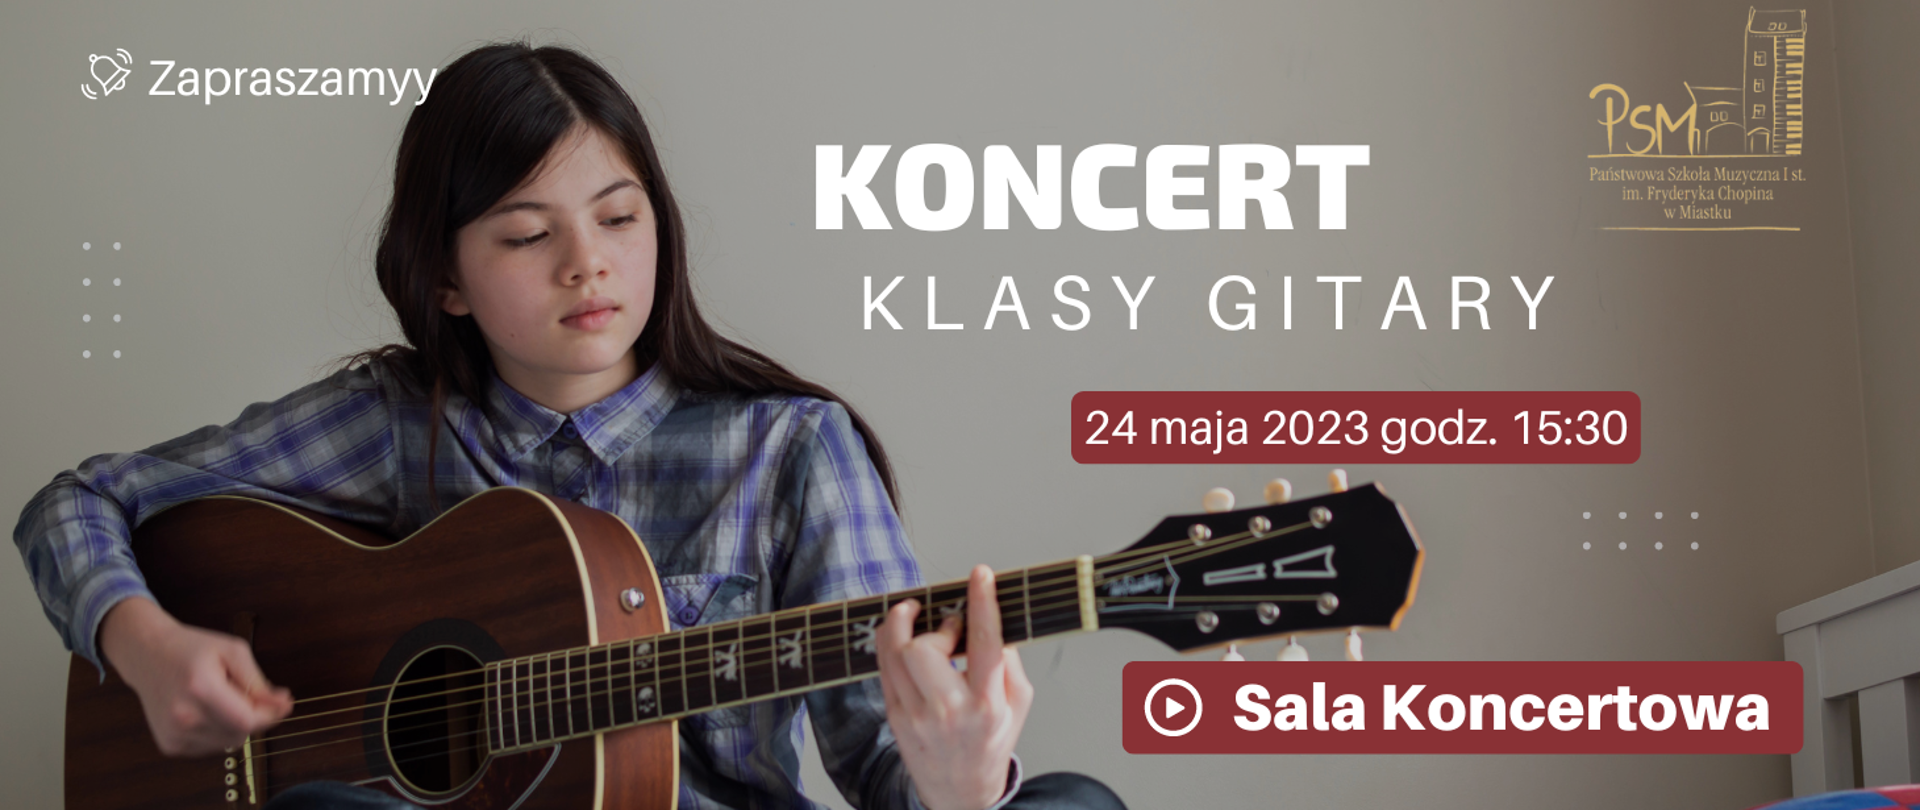 Grafika informująca o koncercie uczniów klasy gitary 24 maja 2023 o godz. 15:30 w sali koncertowej naszej szkoły.